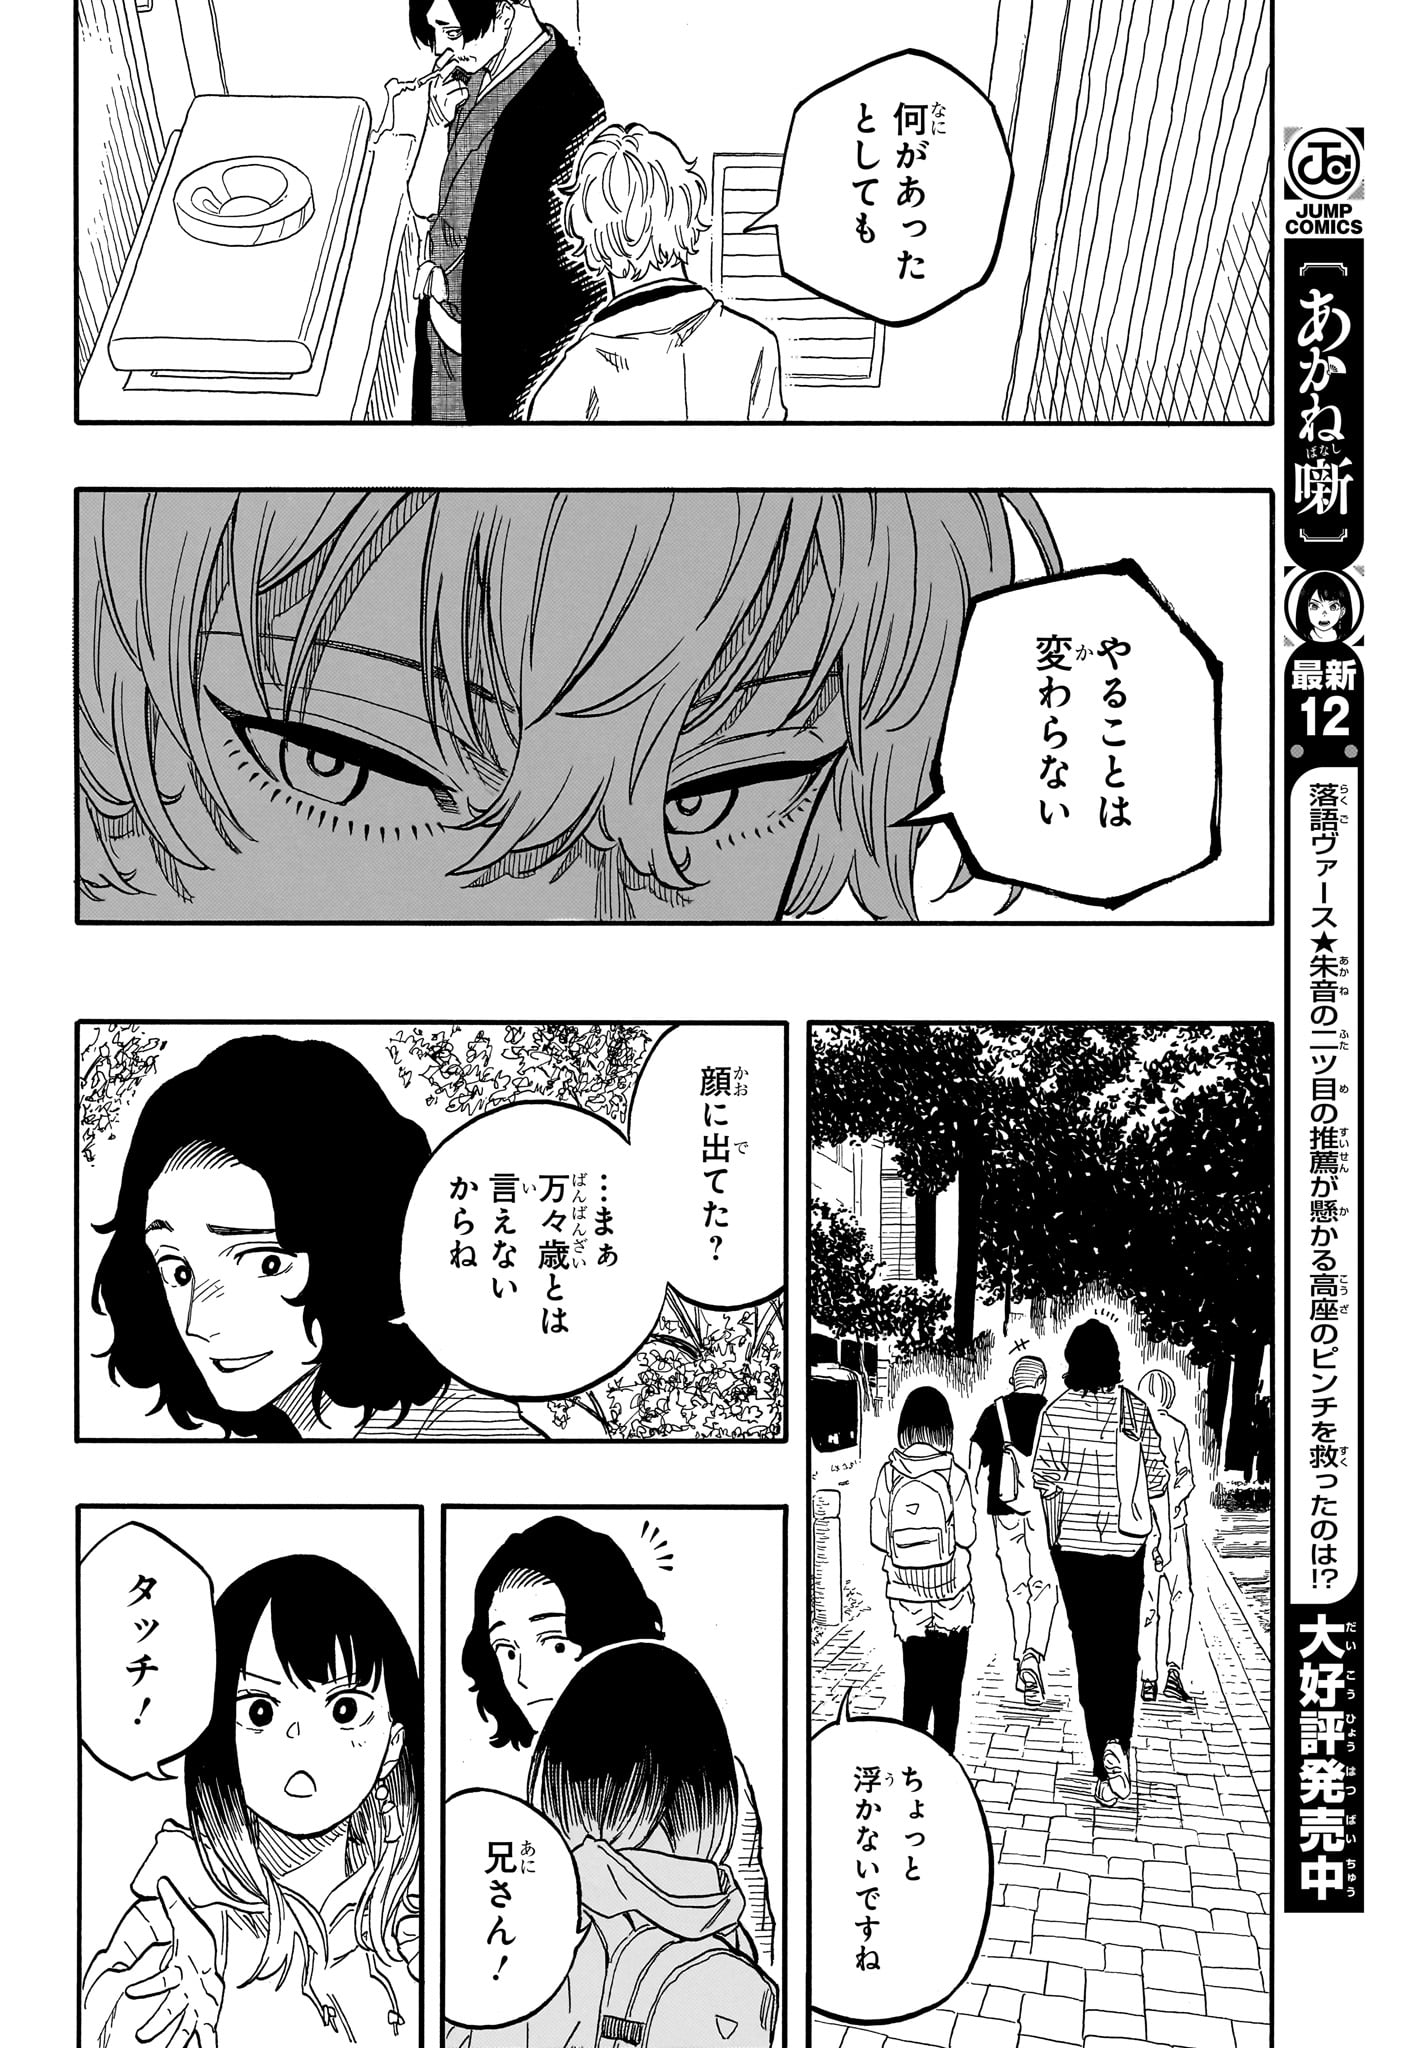 Akane-Banashi - Chapter 117 - Page 16